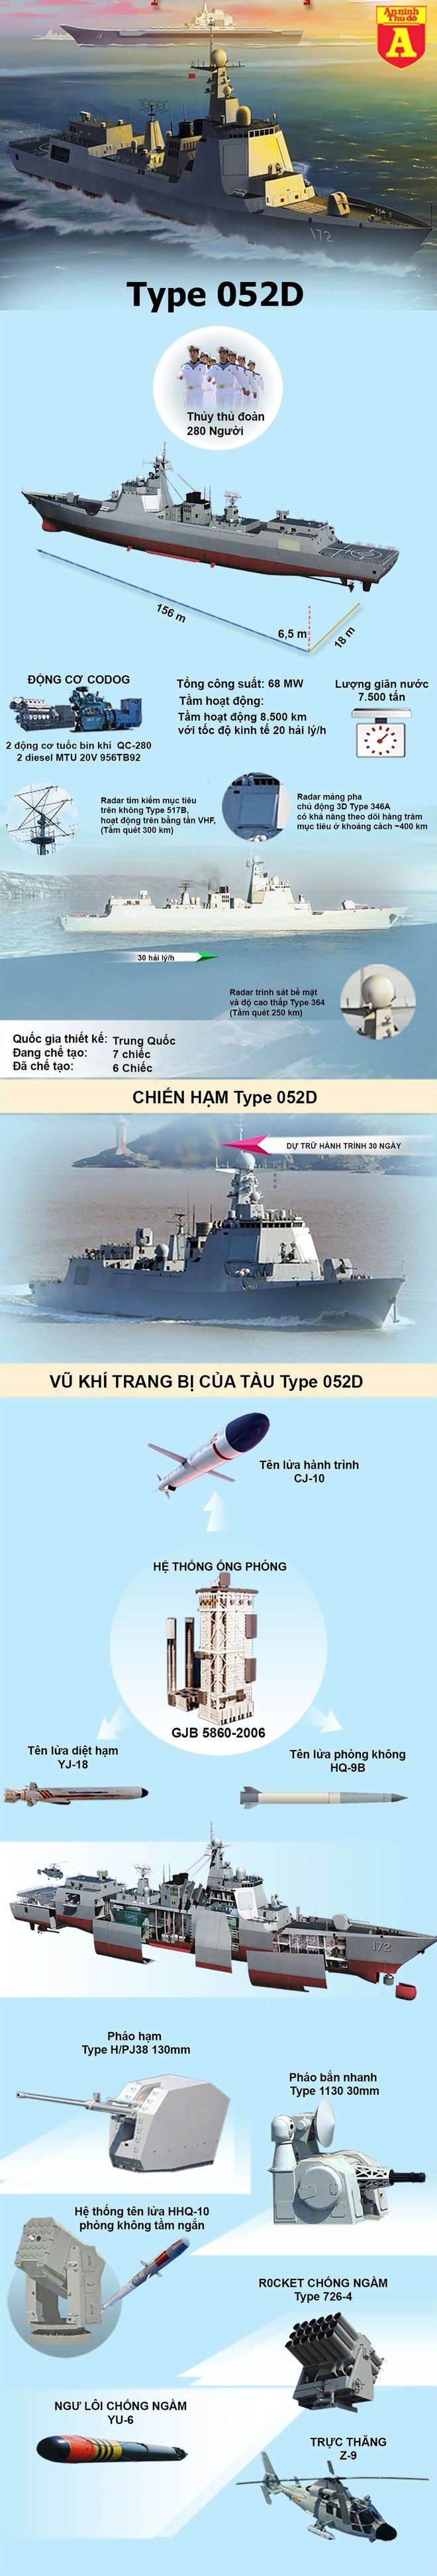 Vì sao chiến hạm mạnh nhất lại khiến hải quân Trung Quốc liên tục phải xấu hổ? - Ảnh 1.